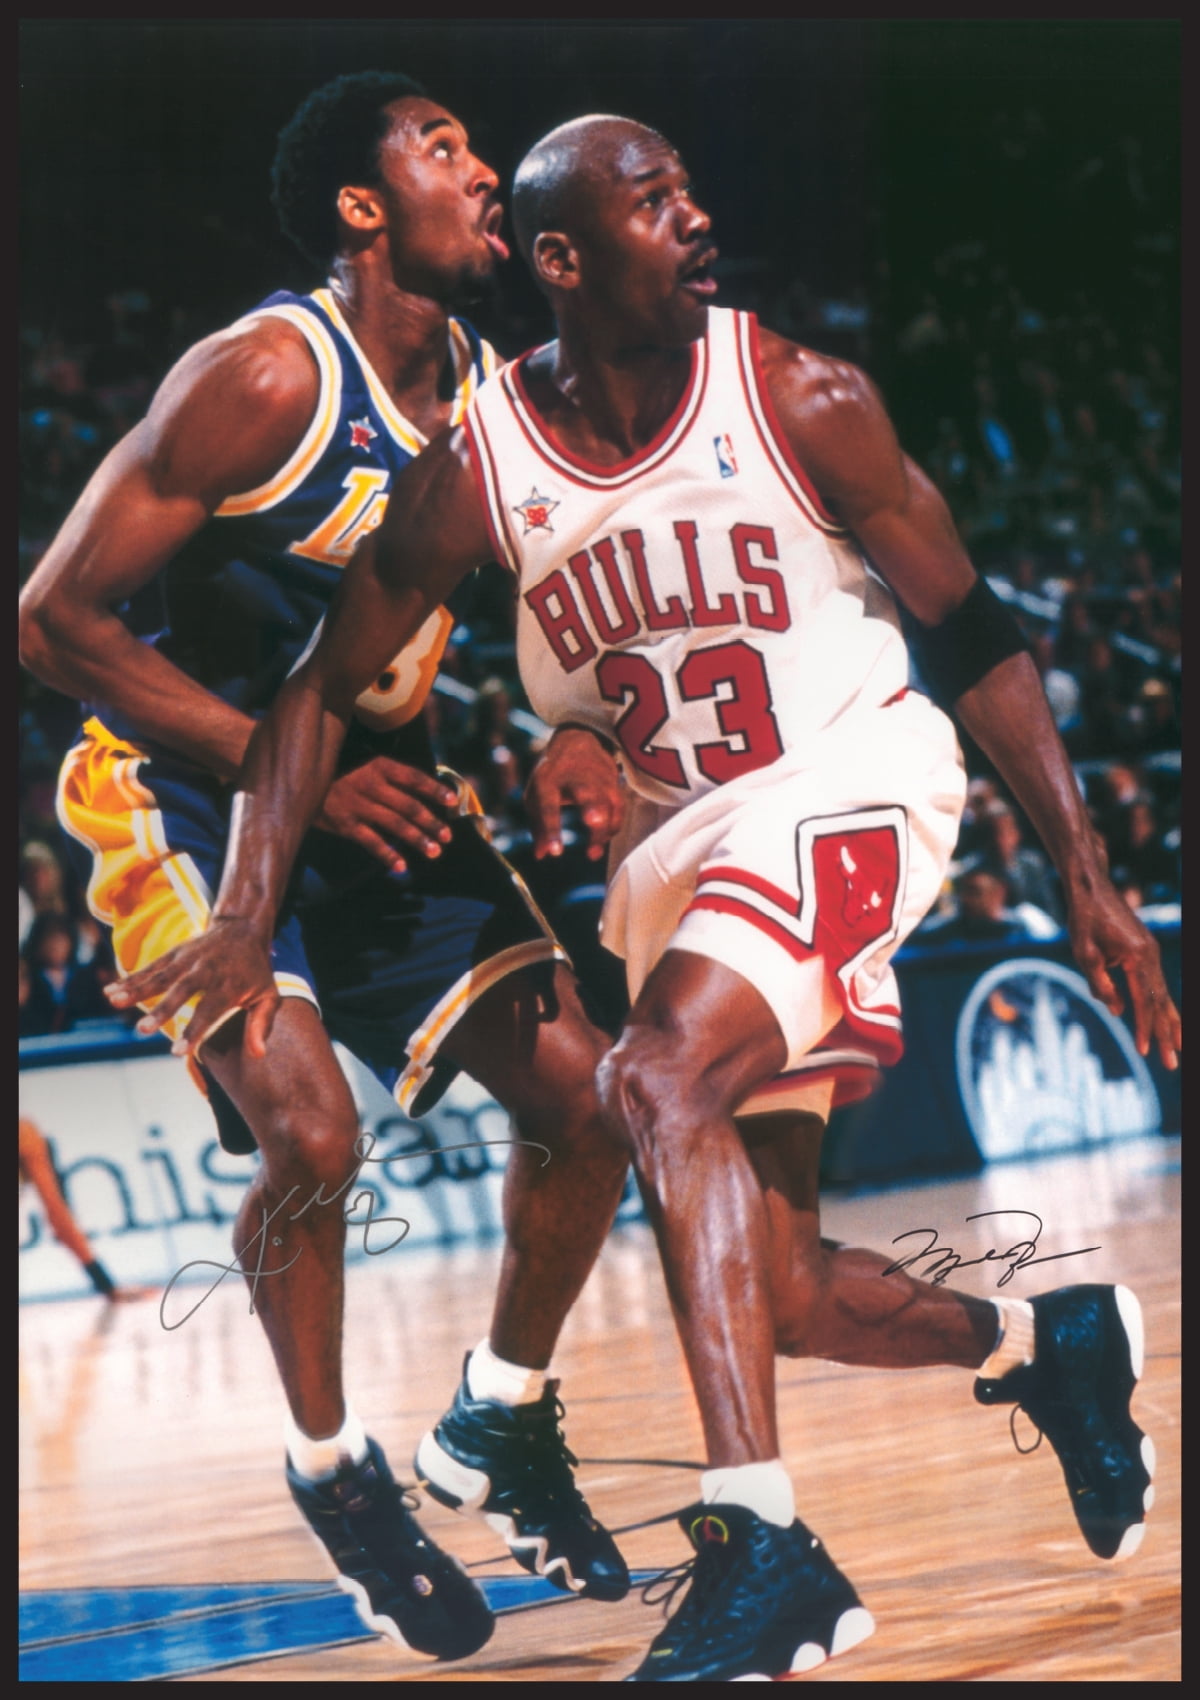 Jordan & Kobe In Action Michael Jordan & Kobe Bryant Poster Print (24 x 36)